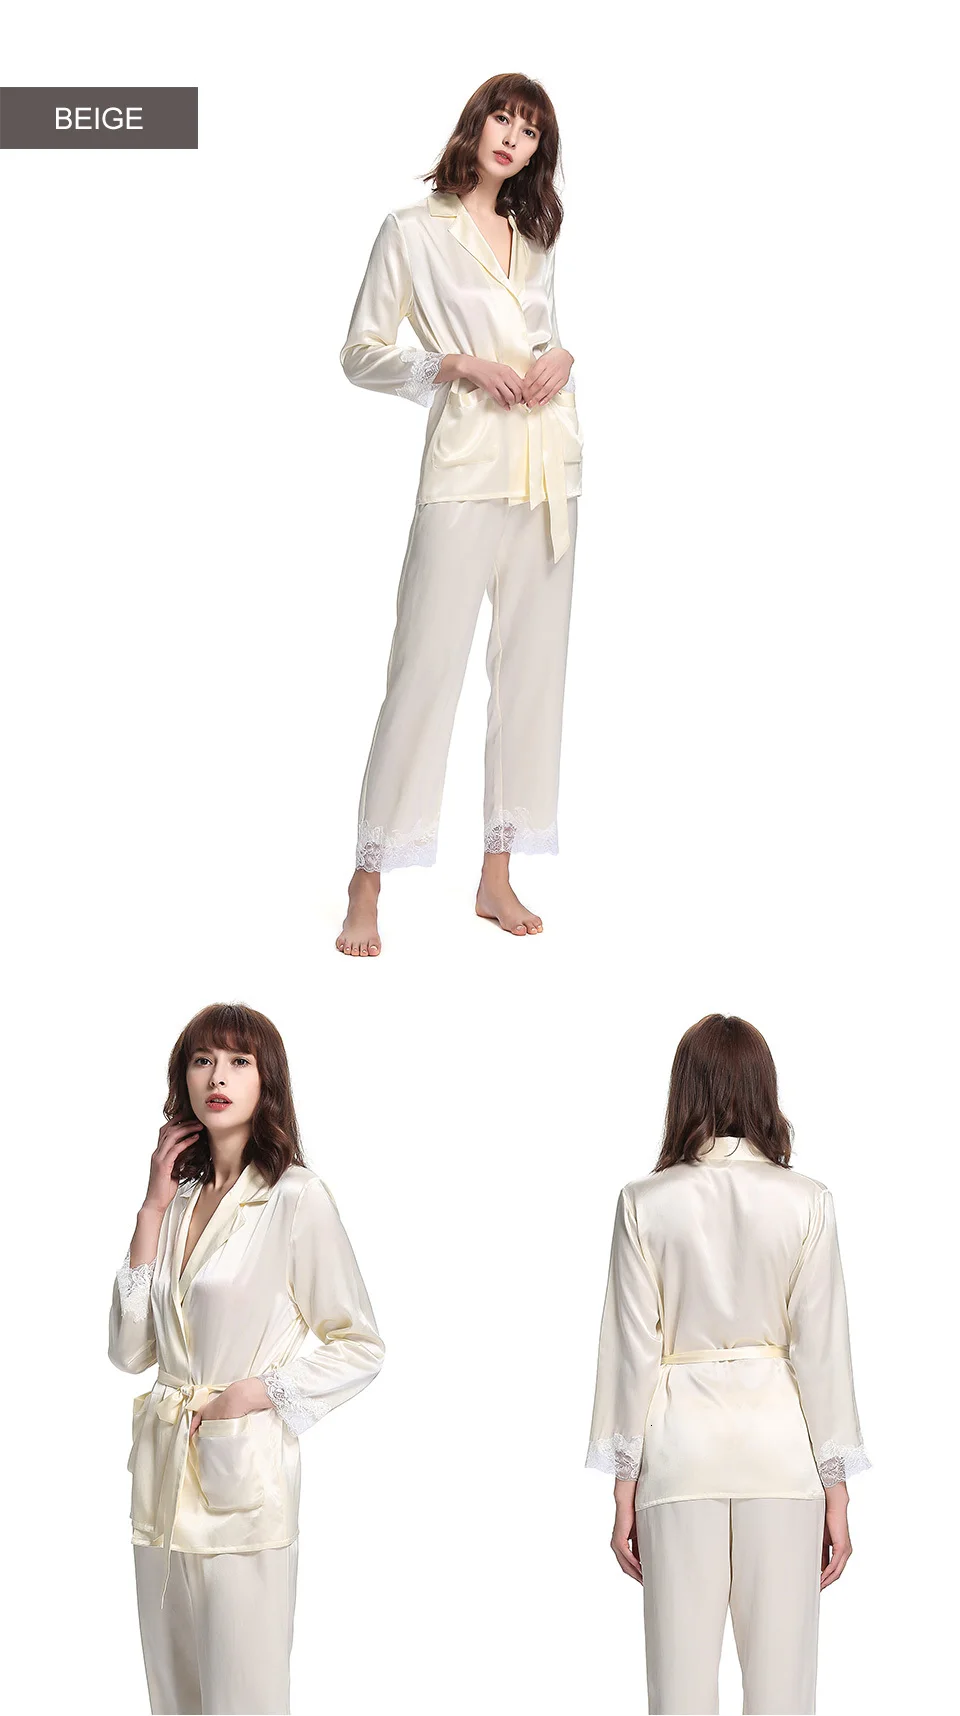 LilySilk пижамный комплект для женщин 100 шелк 22 momme Роскошная Домашняя одежда кружевная отделка длинный рукав пижама распродажа